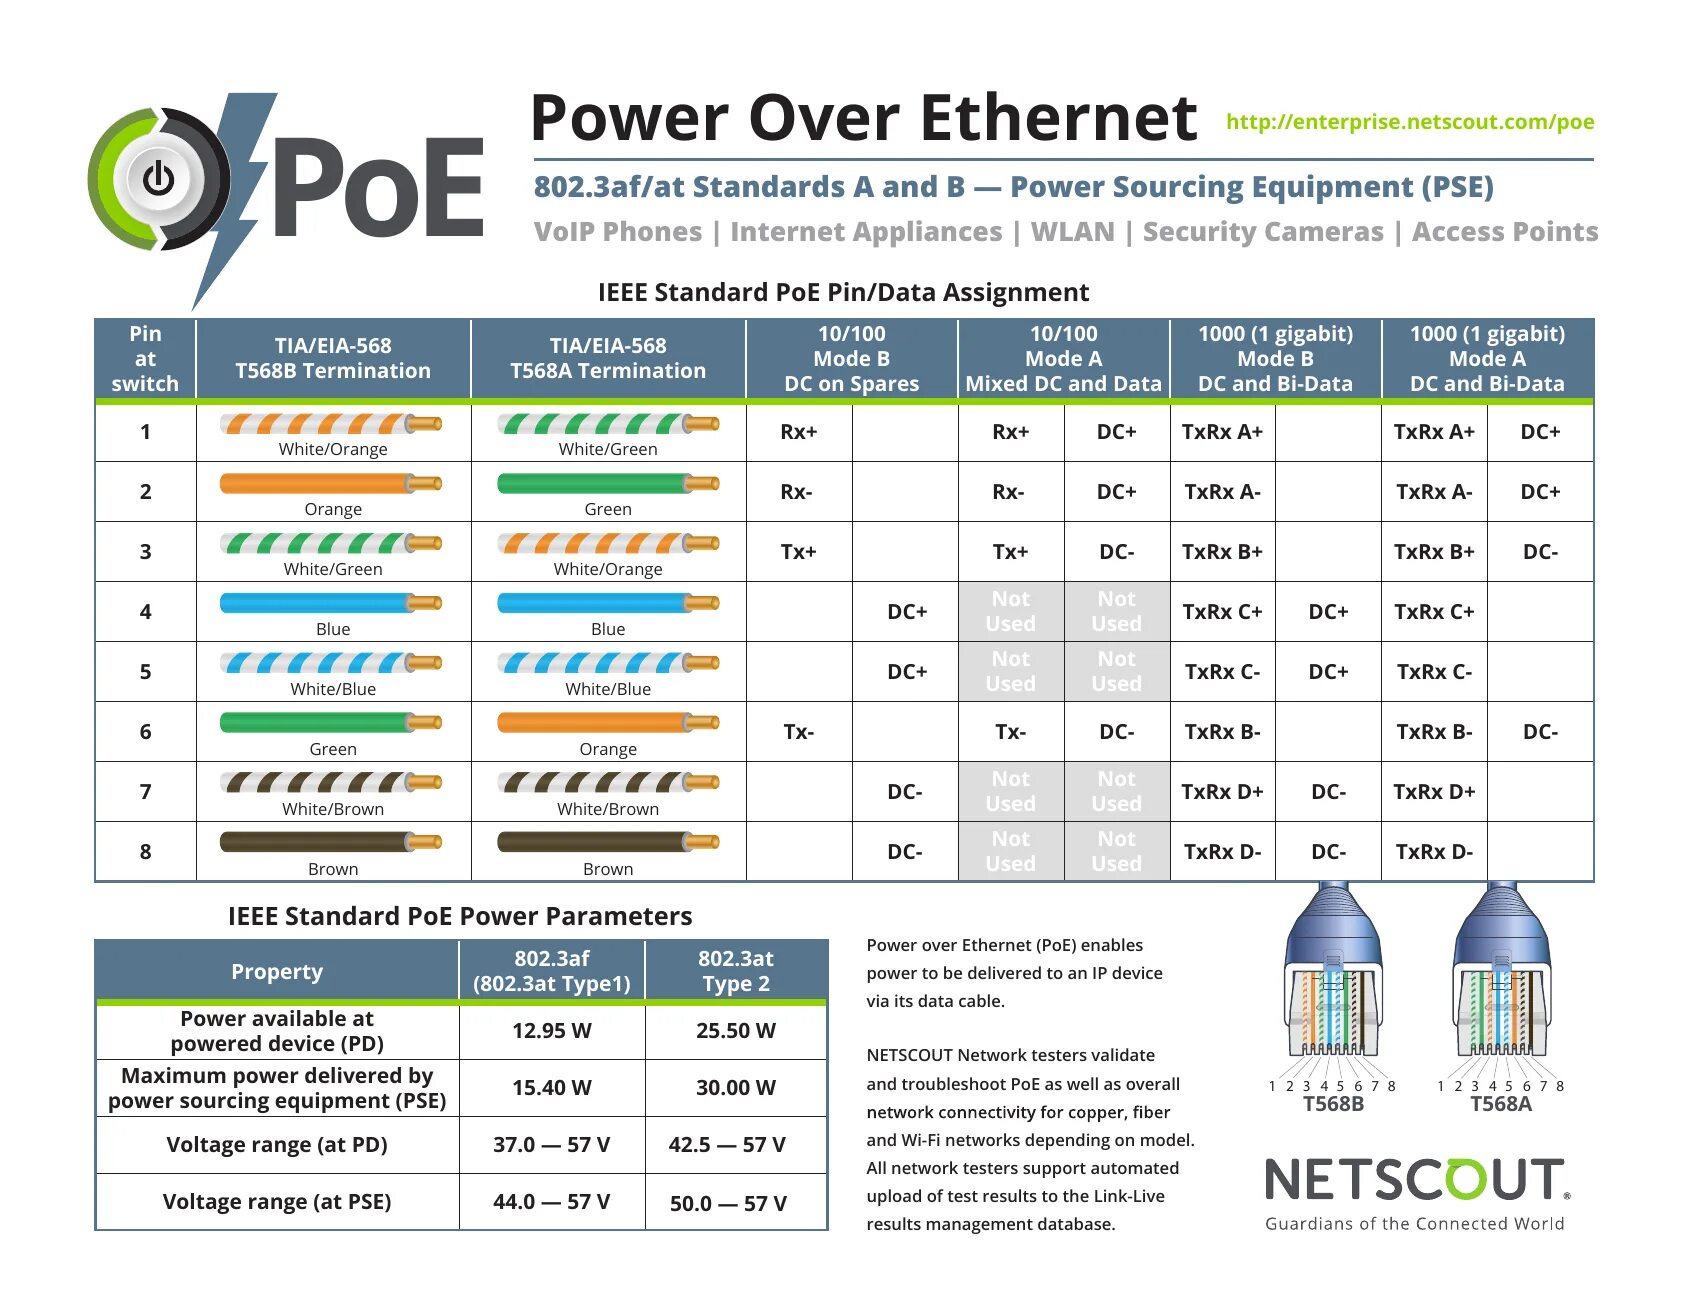 Стандарты poe. POE 802.3at распиновка. POE стандарты 802.3af/at. Power over Ethernet (POE; стандарт IEEE 802.3af (802.3at Type 1. POE 802.3af распиновка.